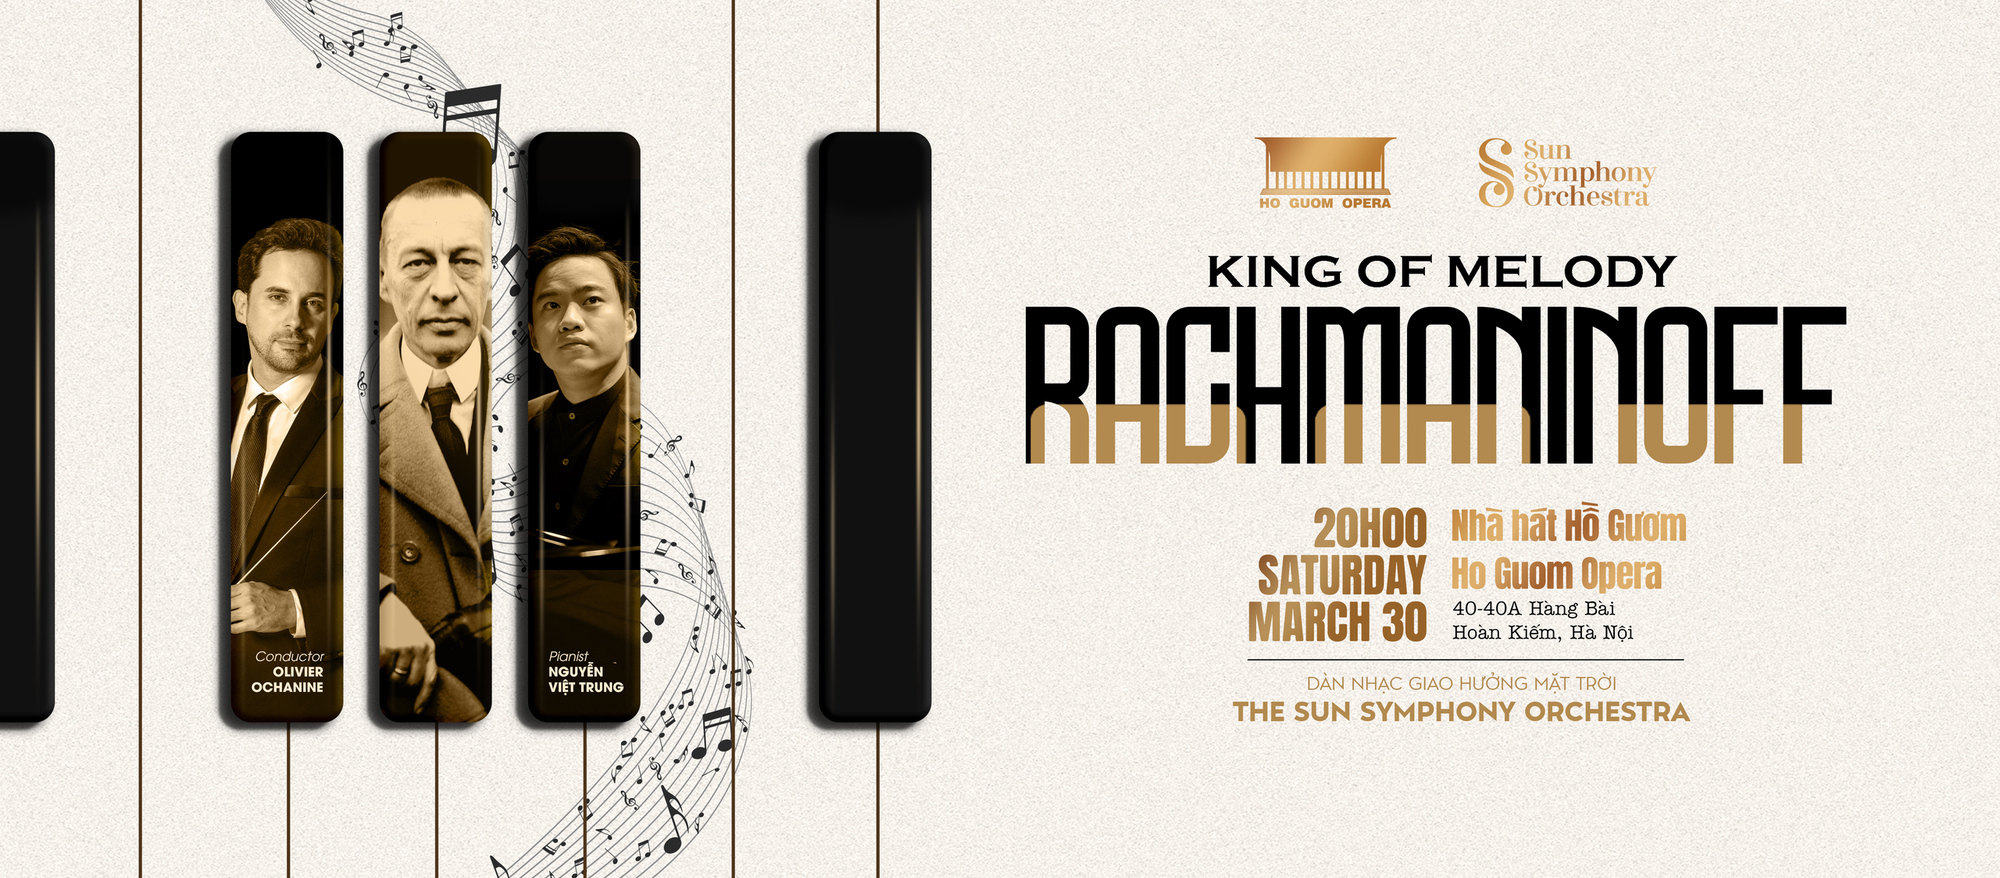 "RACHMANINOFF: King of Melody" - Đêm nhạc đặc biệt tôn vinh nhà soạn nhạc Sergei Rachmaninoff tại Hà Nội- Ảnh 1.